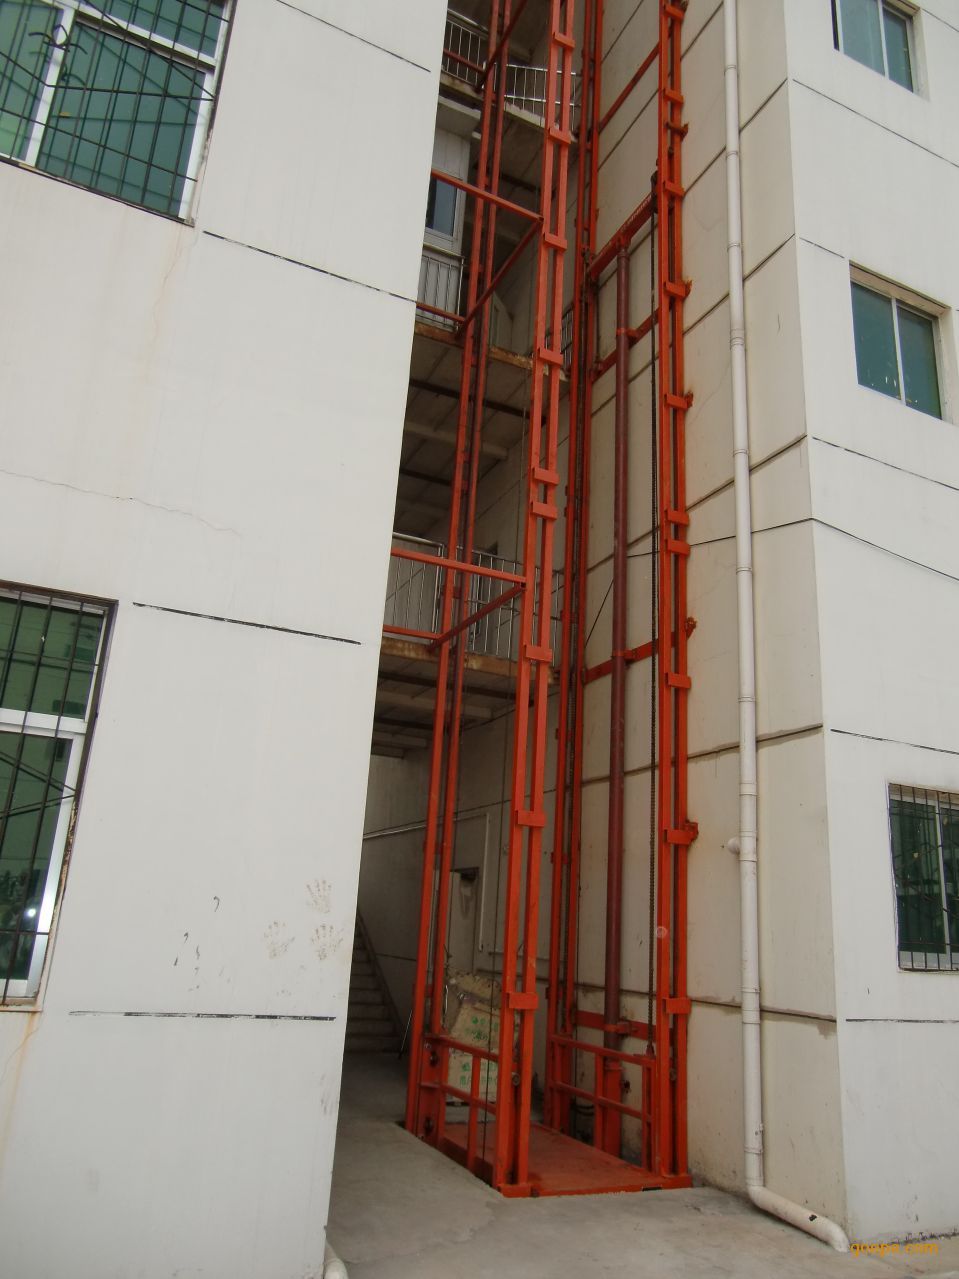 江苏液压升降货梯 电动液压升降平台制造厂家